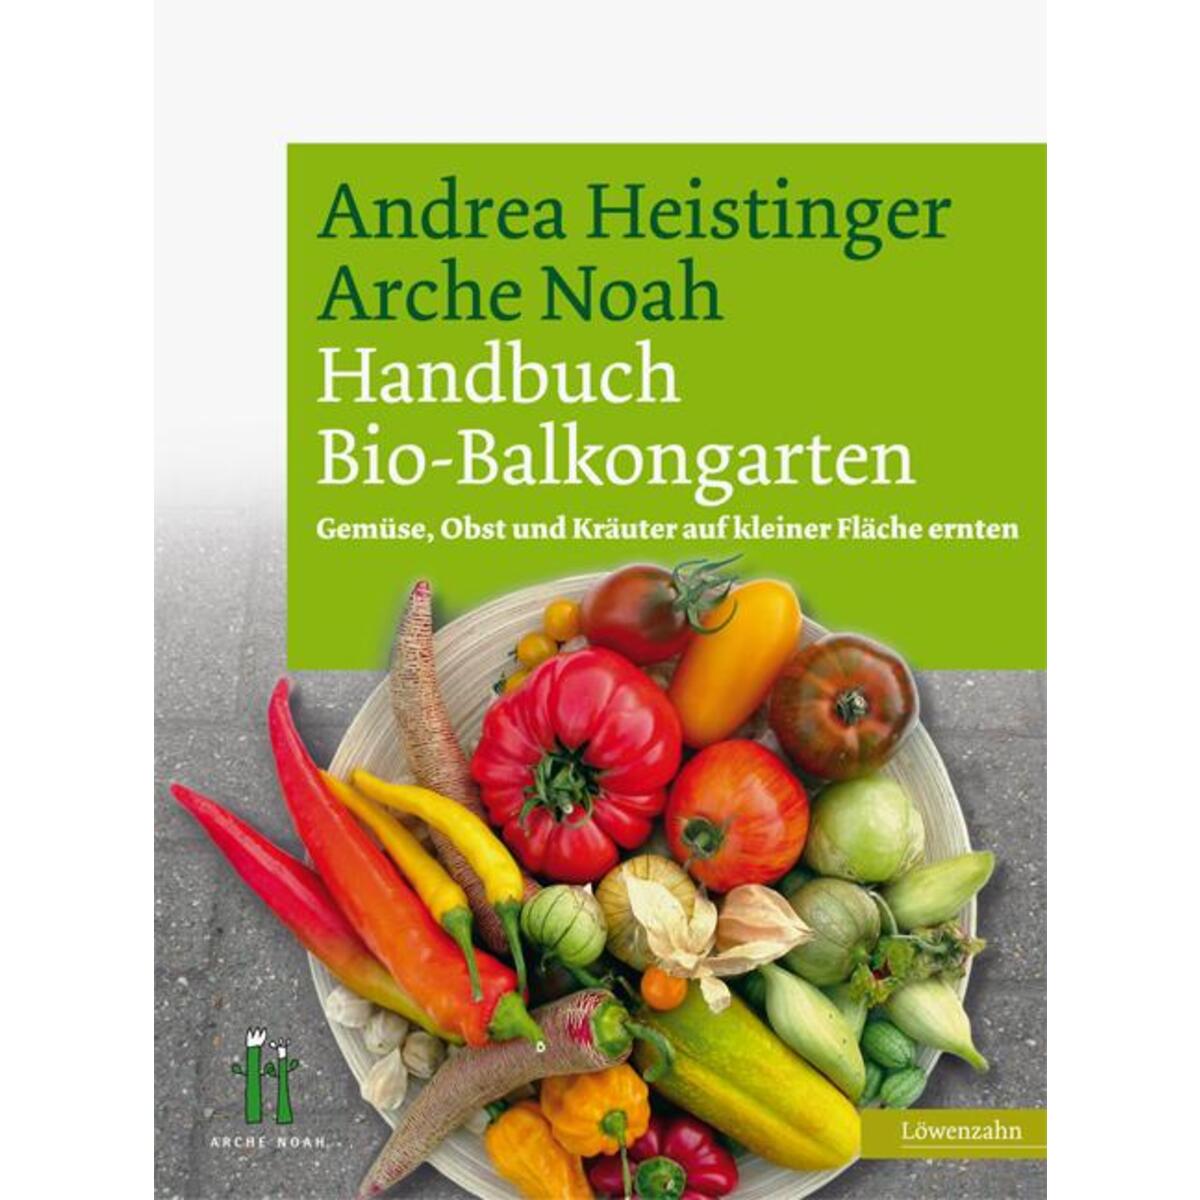 Handbuch Bio-Balkongarten von Edition Loewenzahn